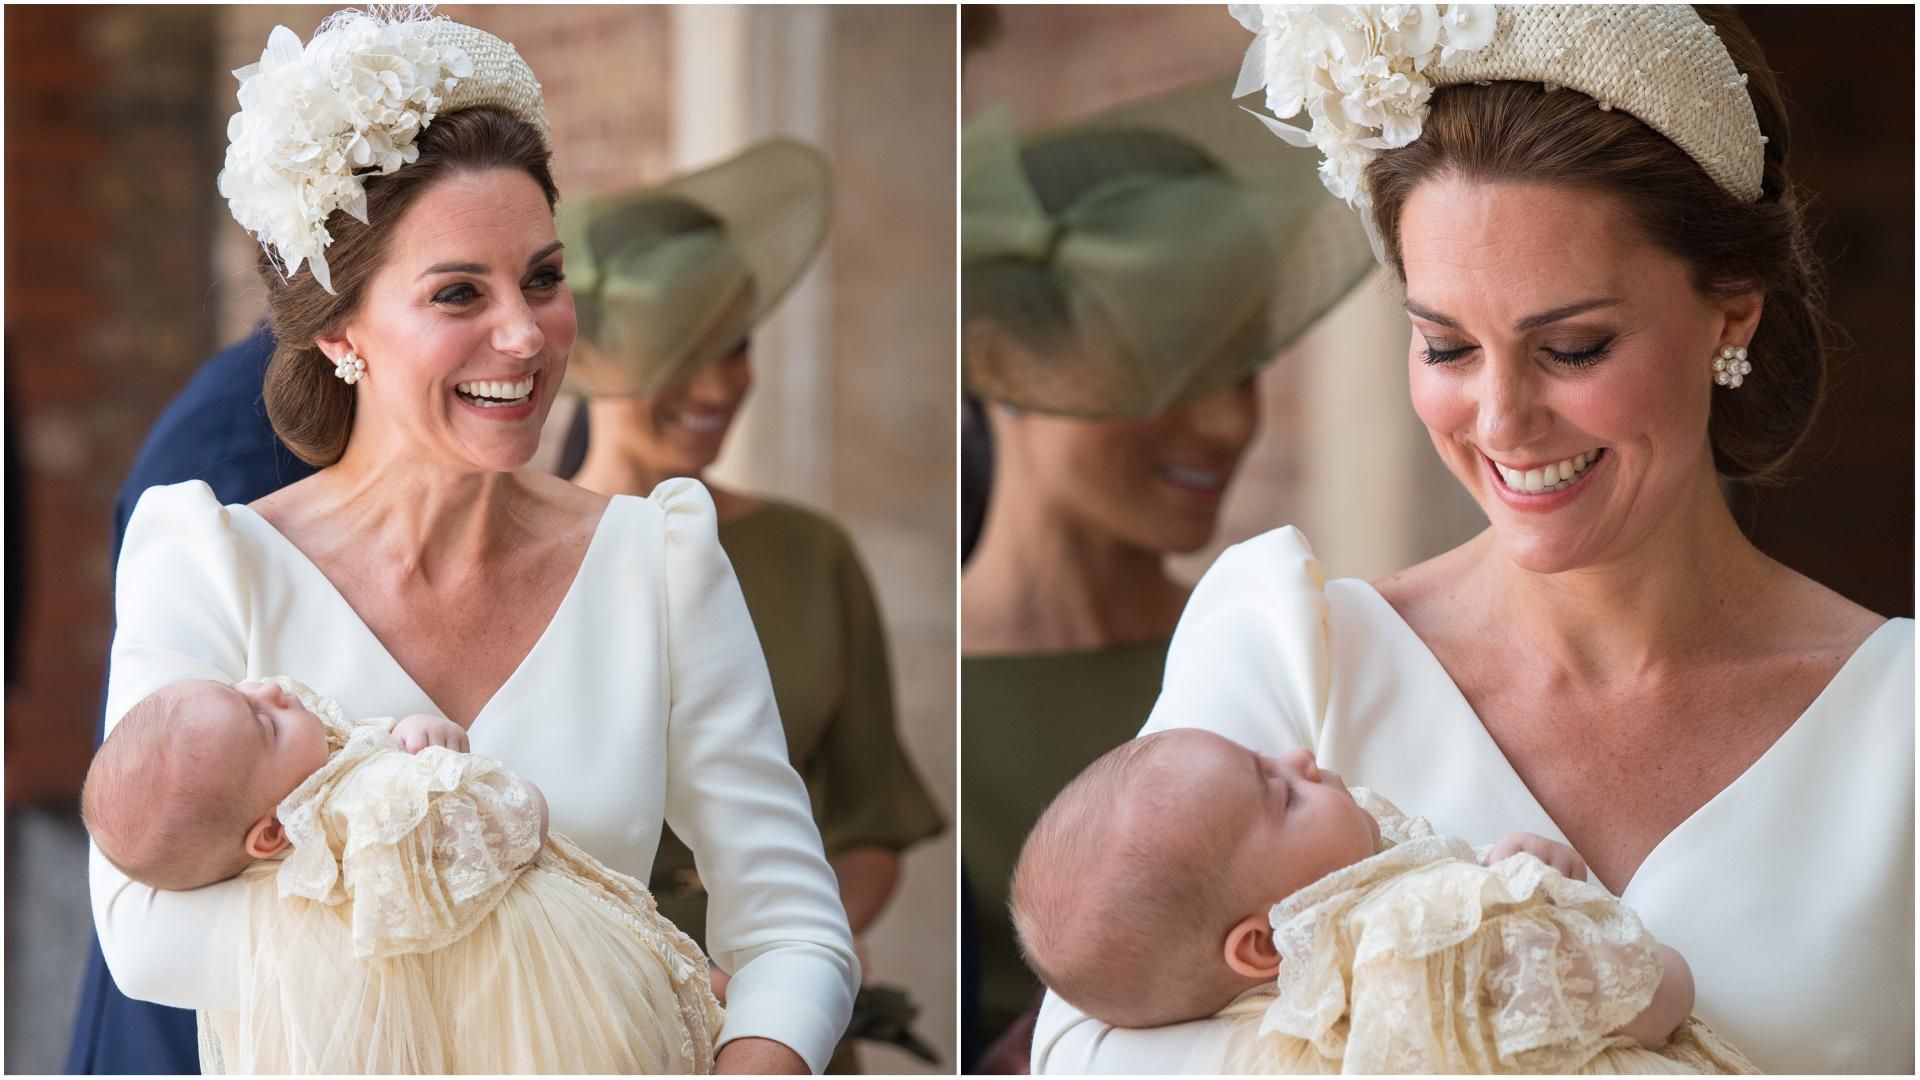 Кейт Миддлтон надела традиционное светлое платье на крестины принца Луи: фото